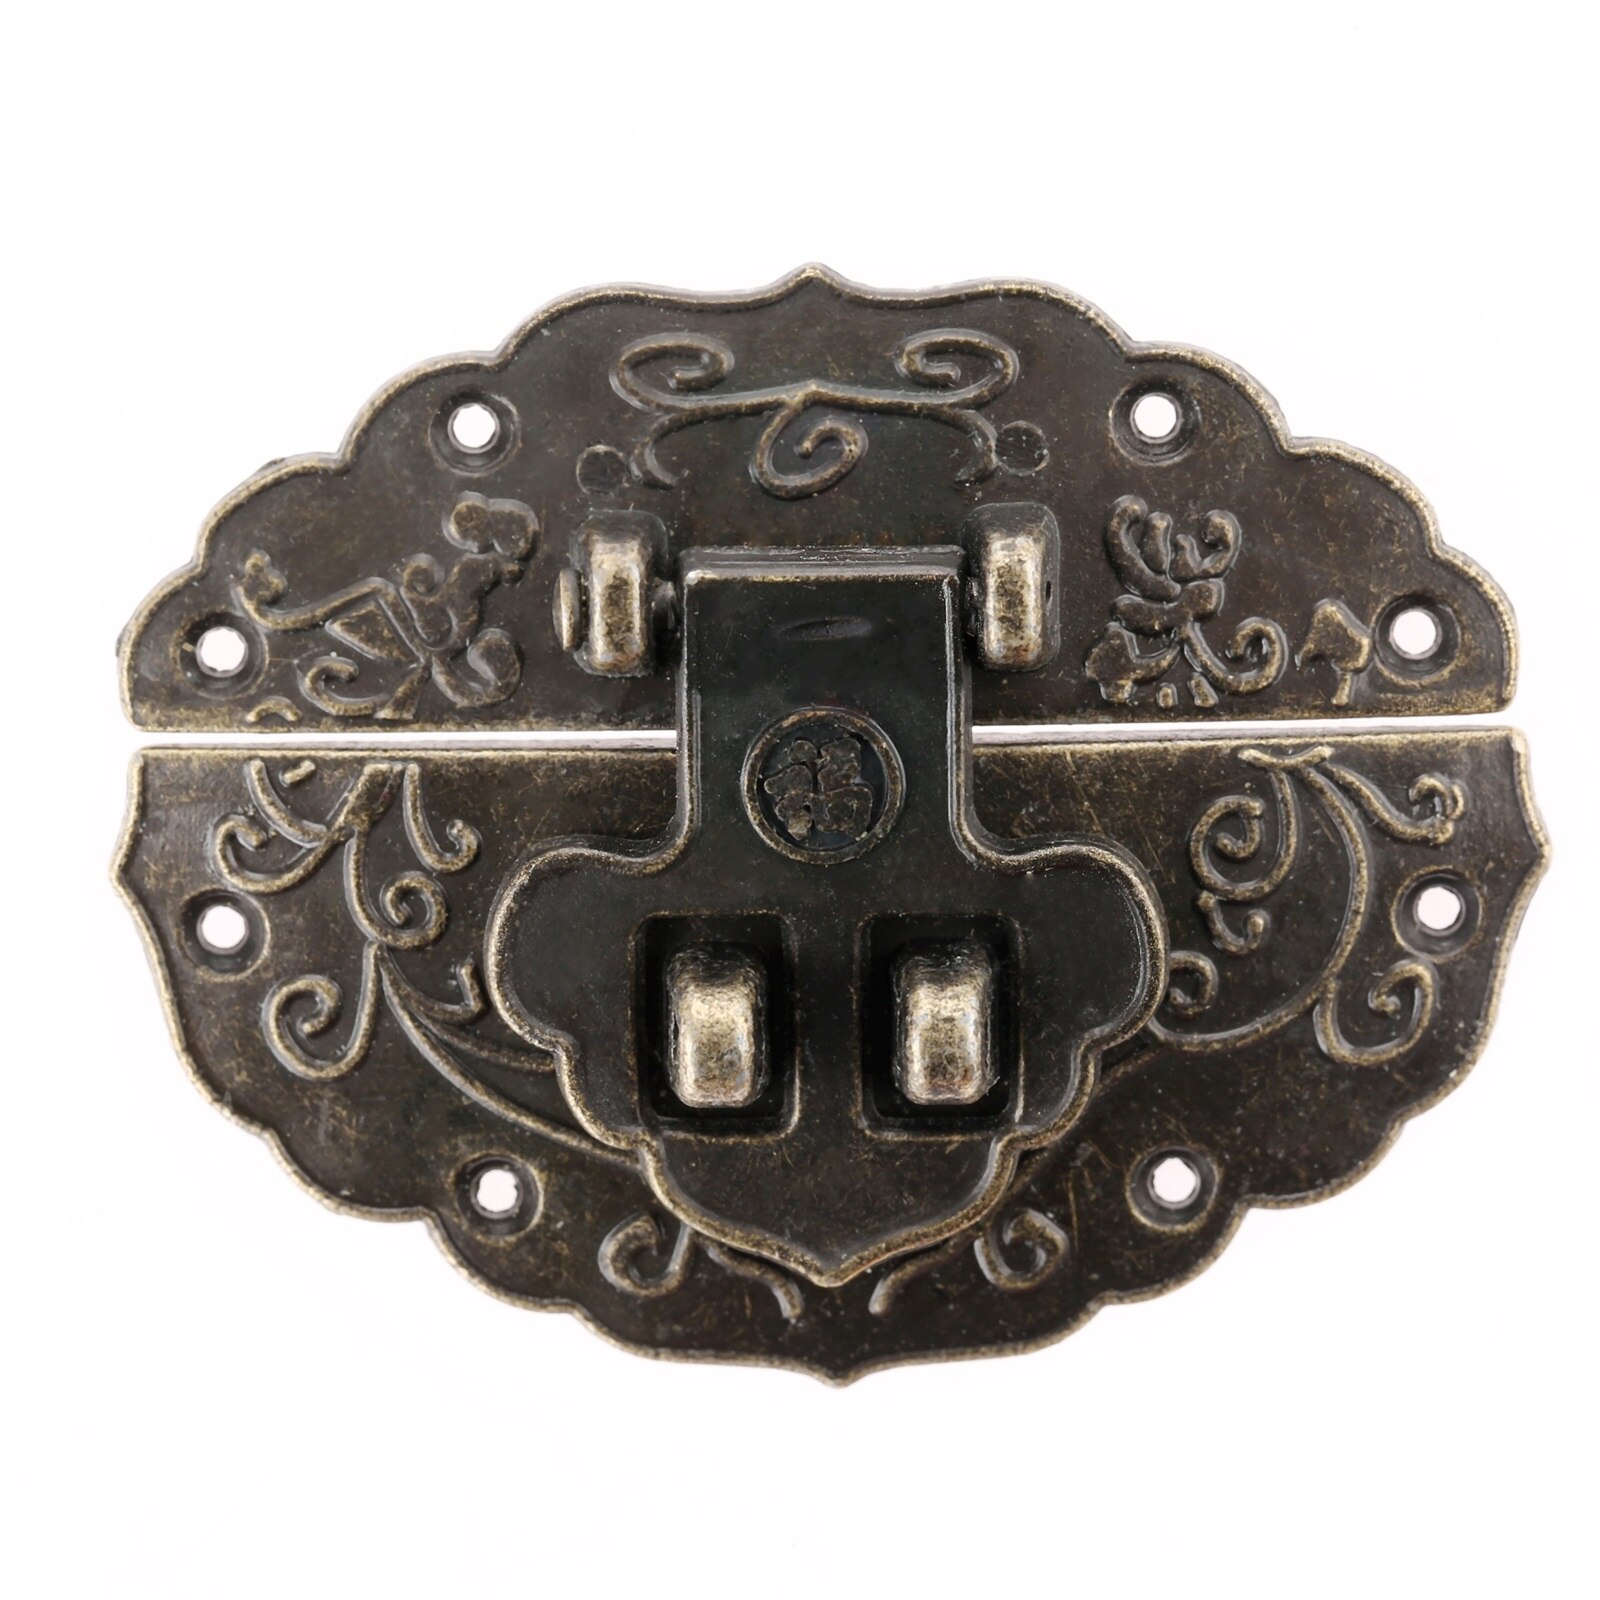 1Pc Houten Case Hasp Vintage Stijl Decoratieve Sieraden Geschenkdoos Koffer Hasp Klink Meubels Gesp Sluiting Lock